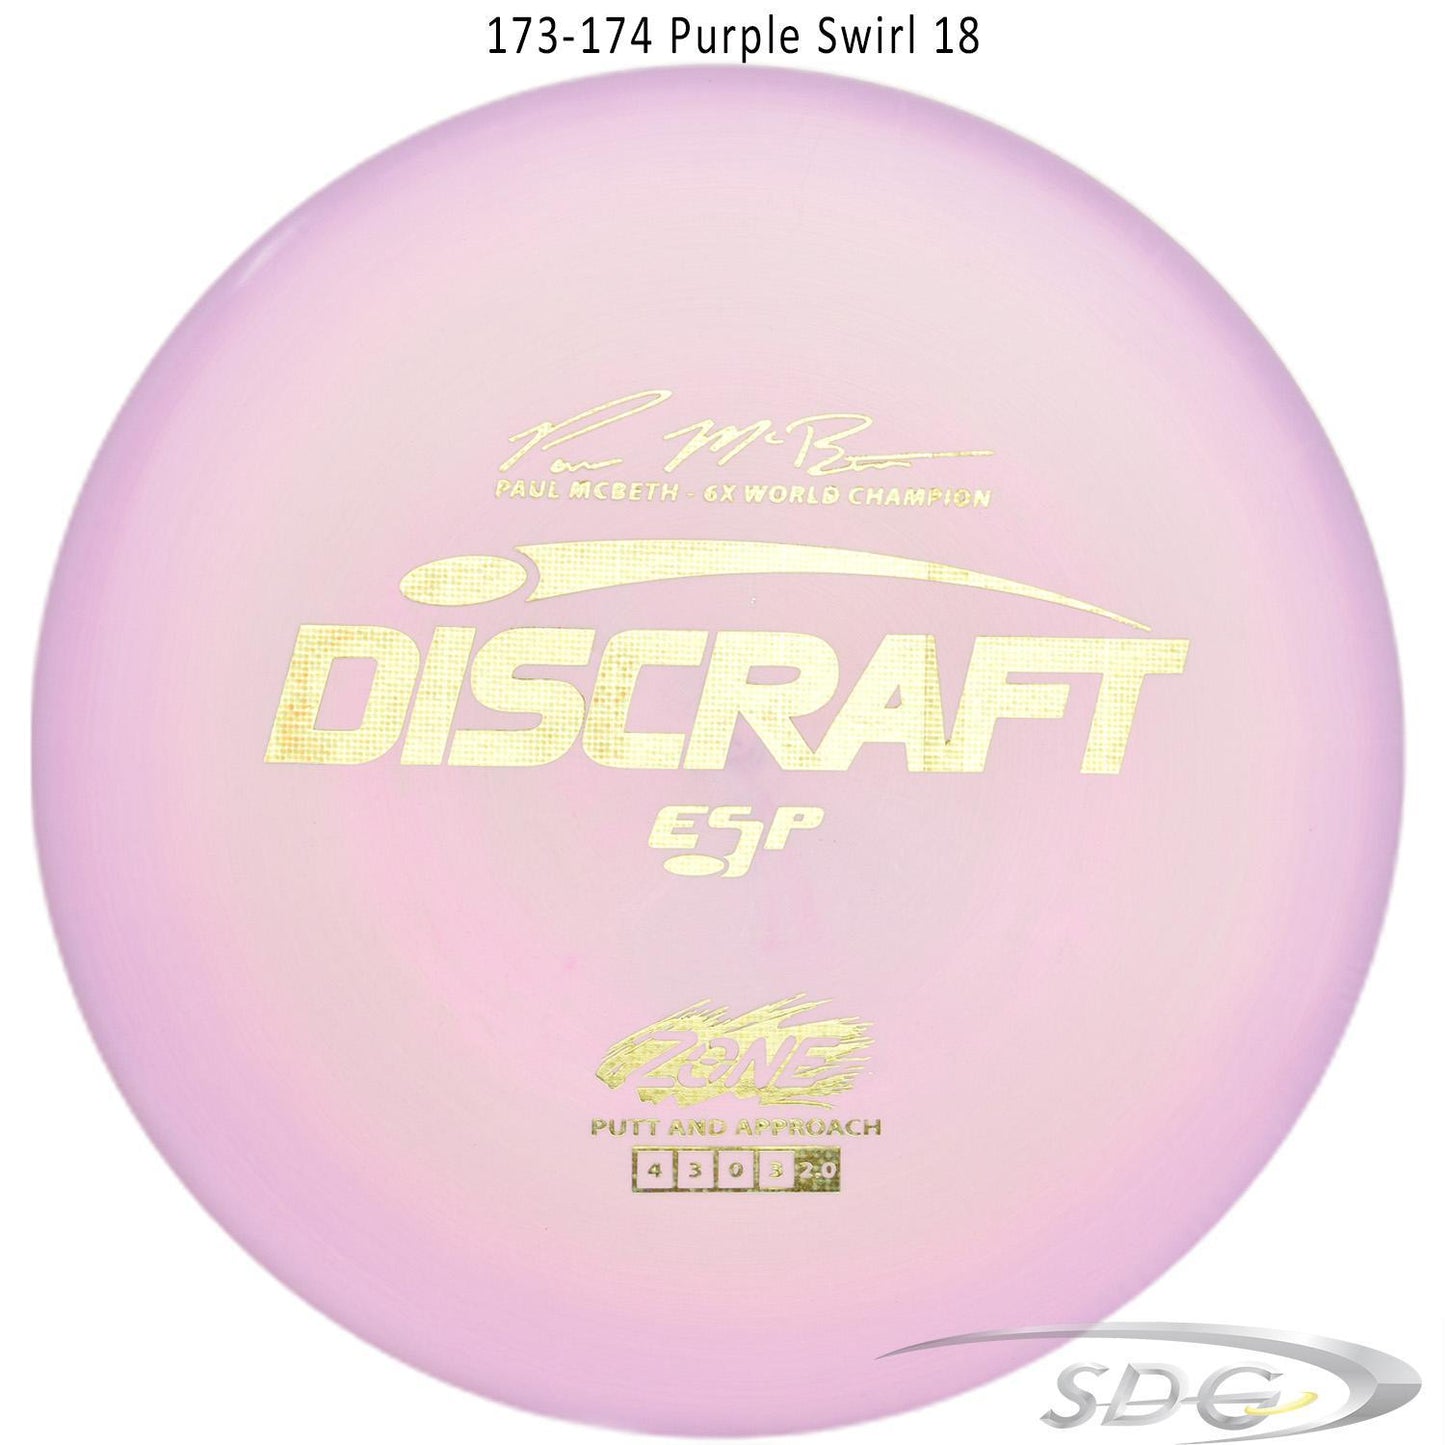 discraft-esp-zone-paul-mcbeth-signature-series-disc-golf-putter-176-173-weights 173-174 Purple Swirl 18 